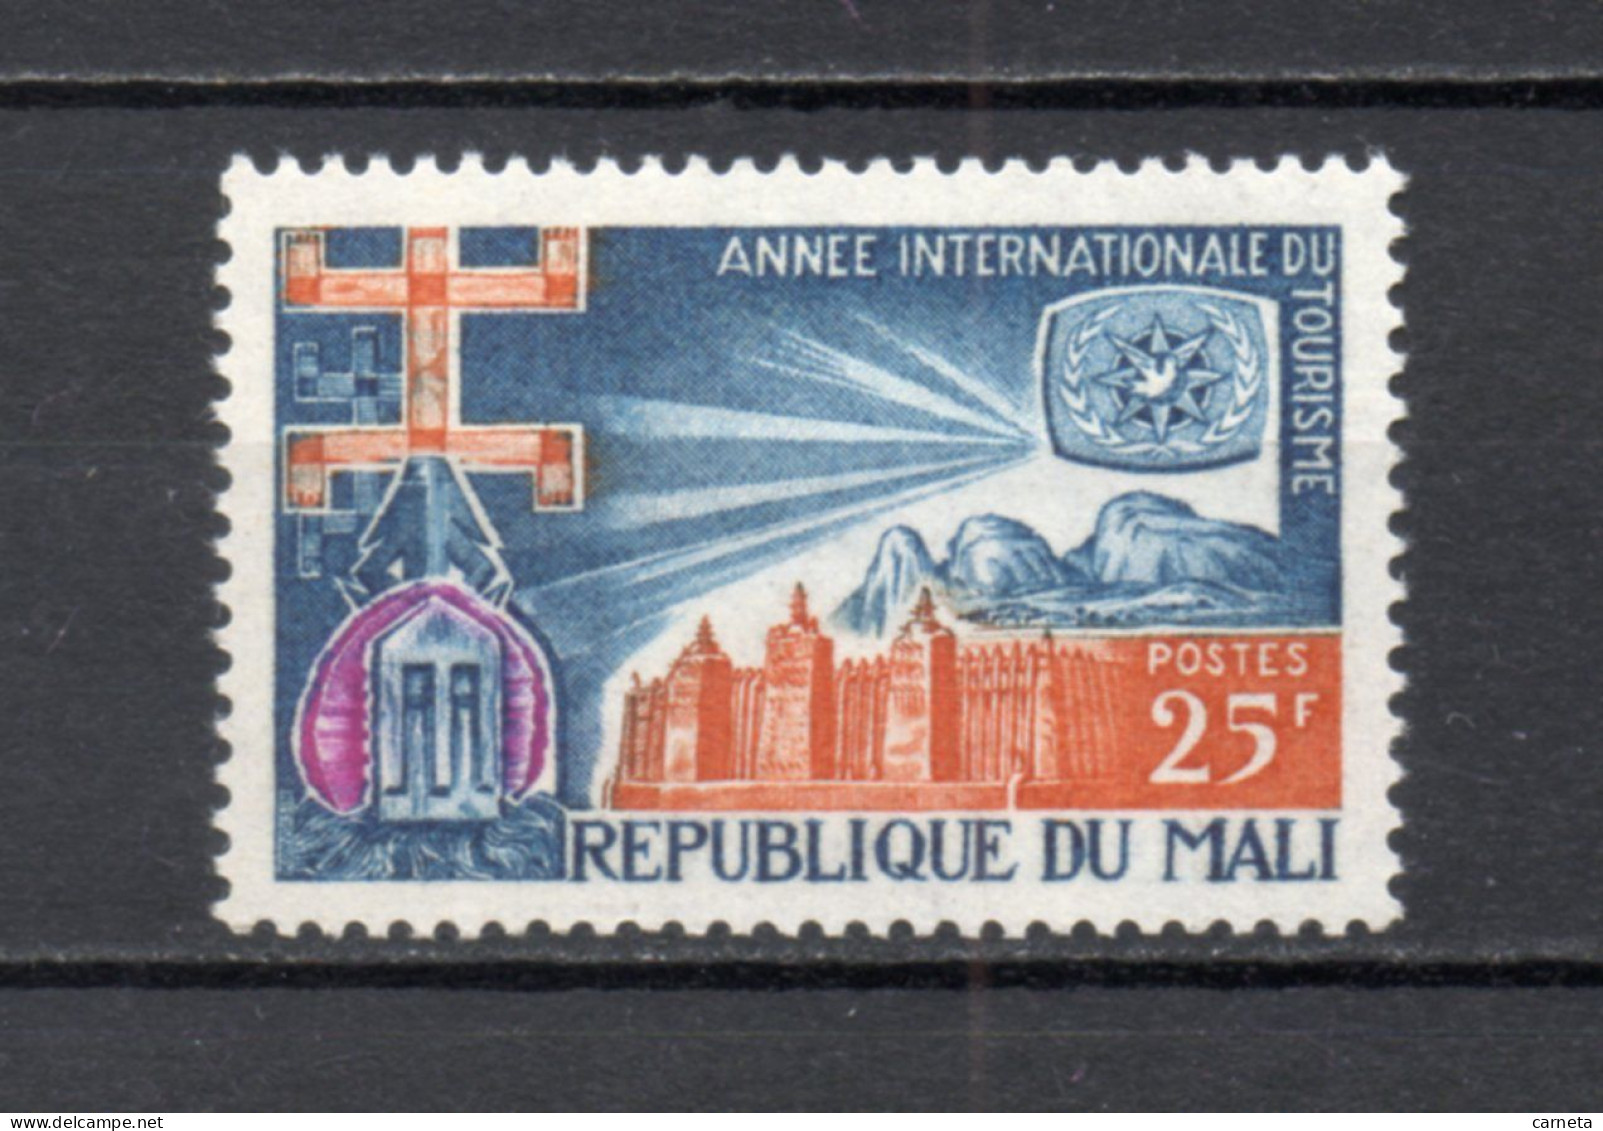 MALI  N° 100  NEUF SANS CHARNIERE  COTE 1.00€   TOURISME - Malí (1959-...)